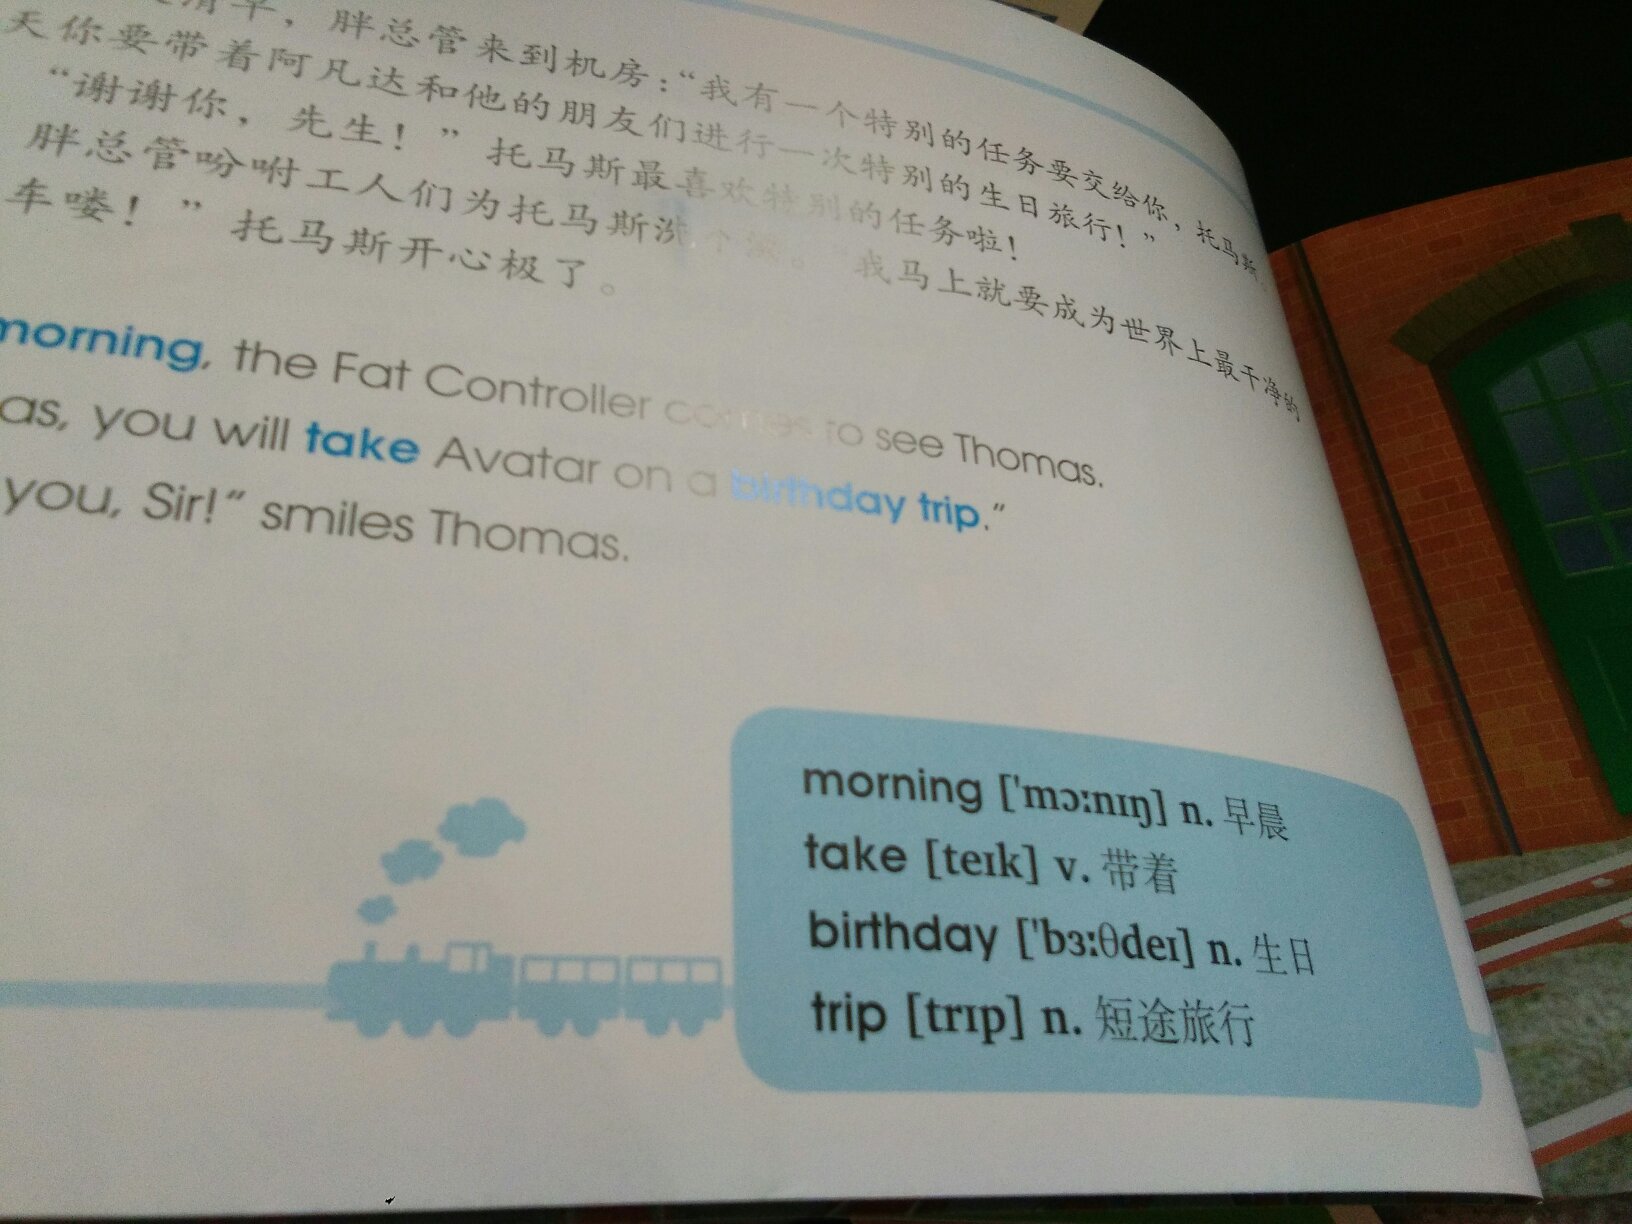 很不错的一套托马斯丛书，中英文双语的，宝贝很喜欢托马斯，应该也会喜欢这套书。